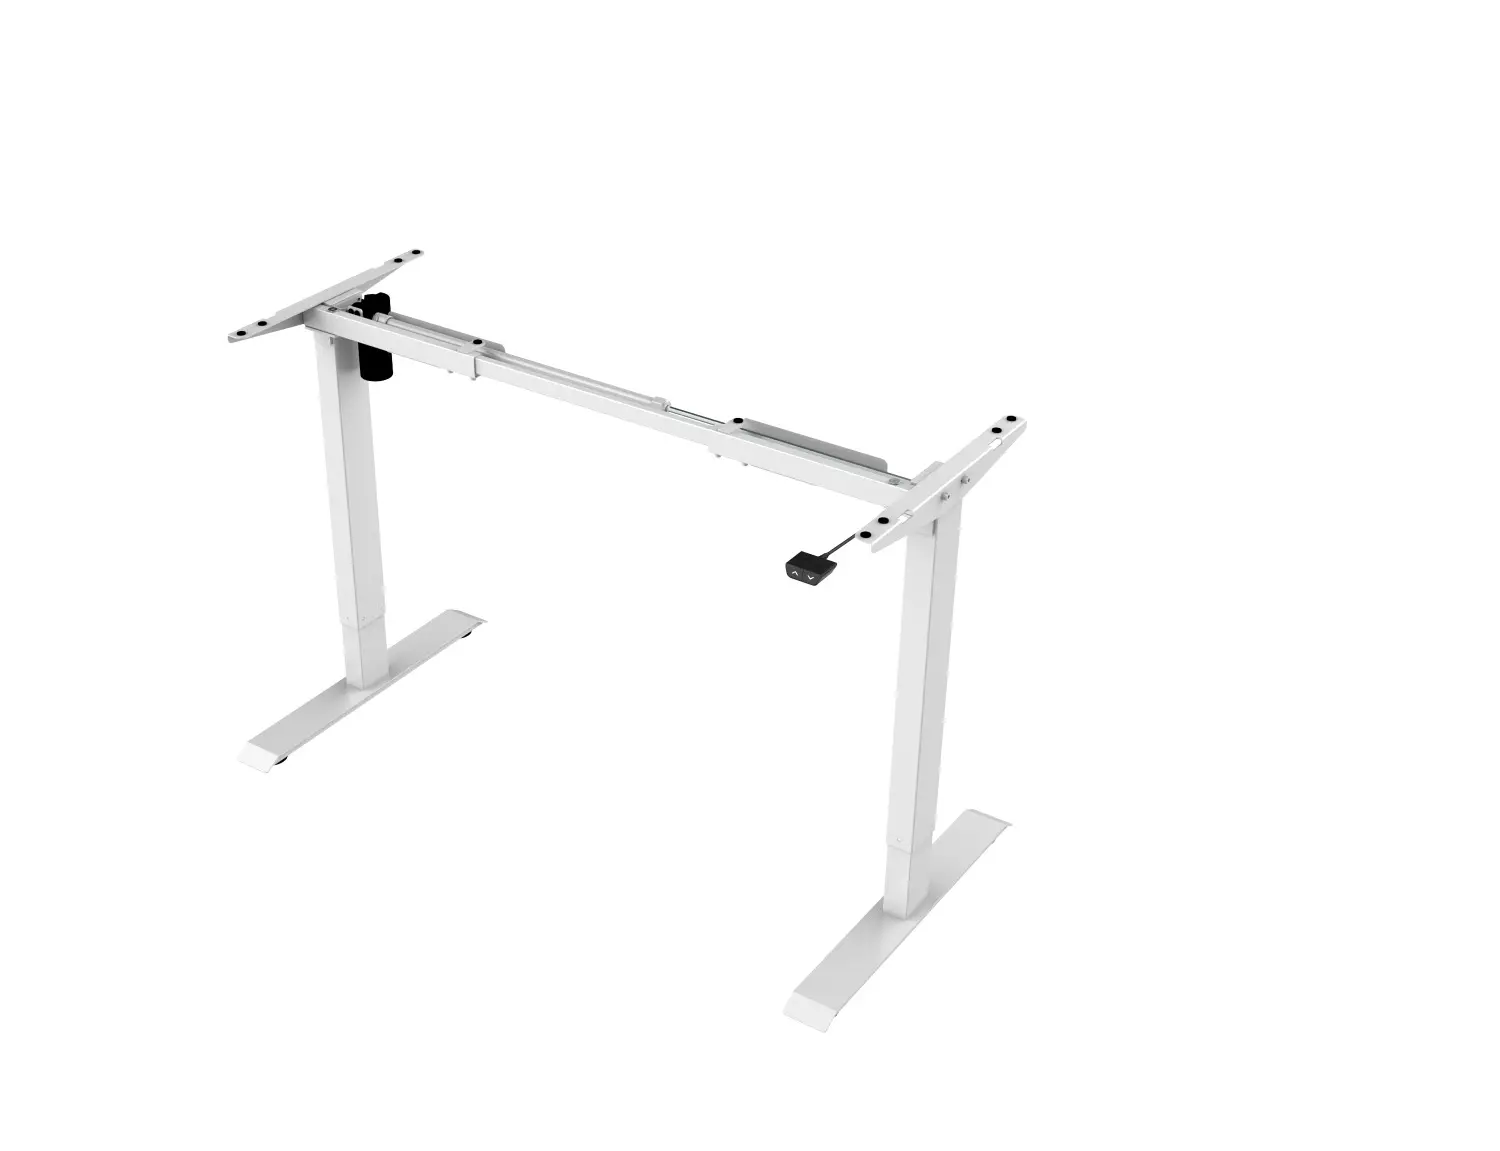 Elektromosan állítható magasságú íróasztal fehér láb, fehér lap 140x70cm (ET114E-N-WHITE/WHITE)